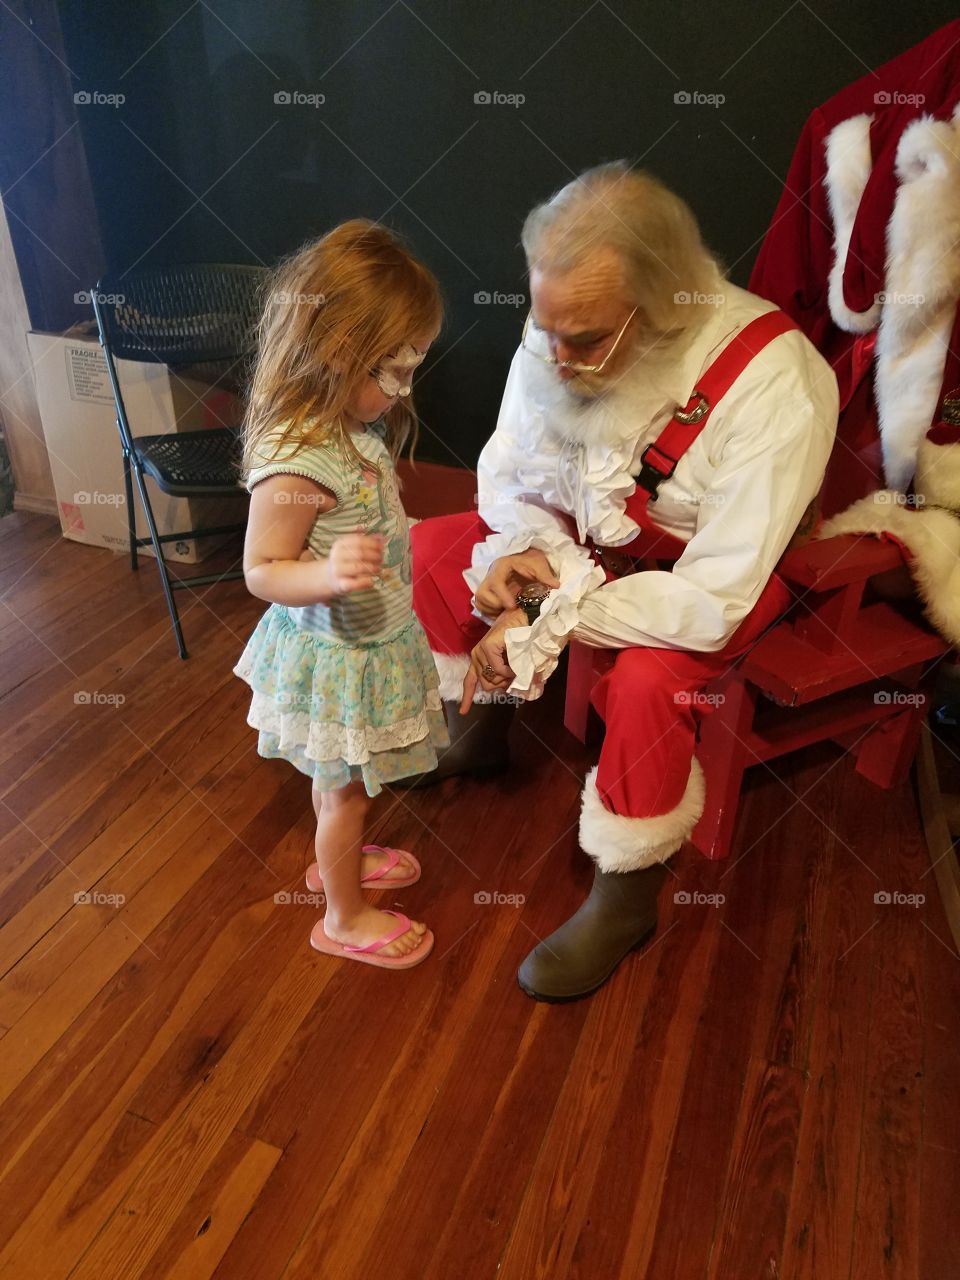 talking with Santa